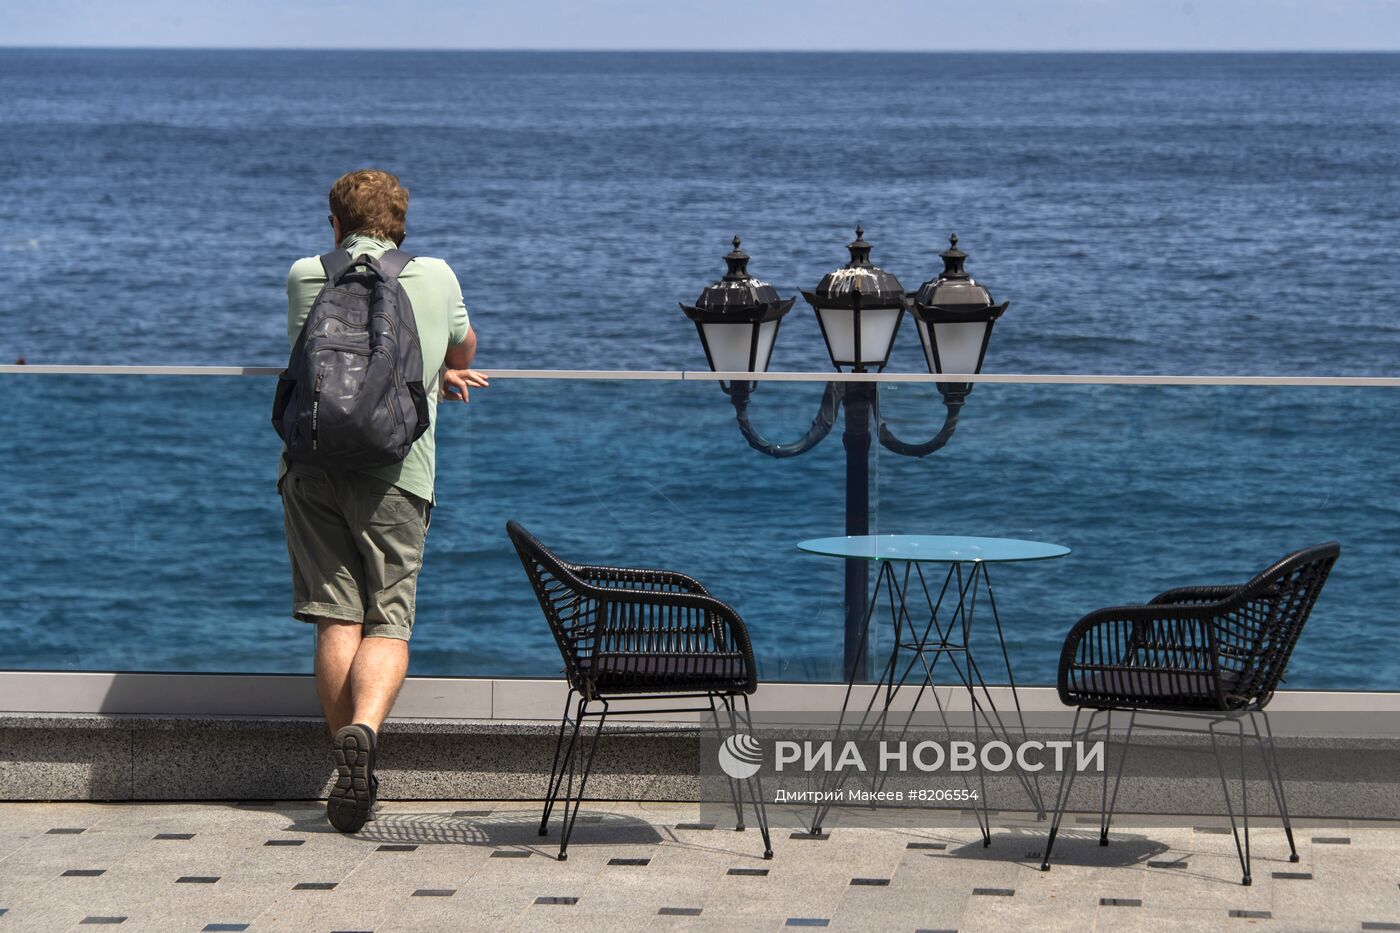  Повседневная жизнь в Крыму